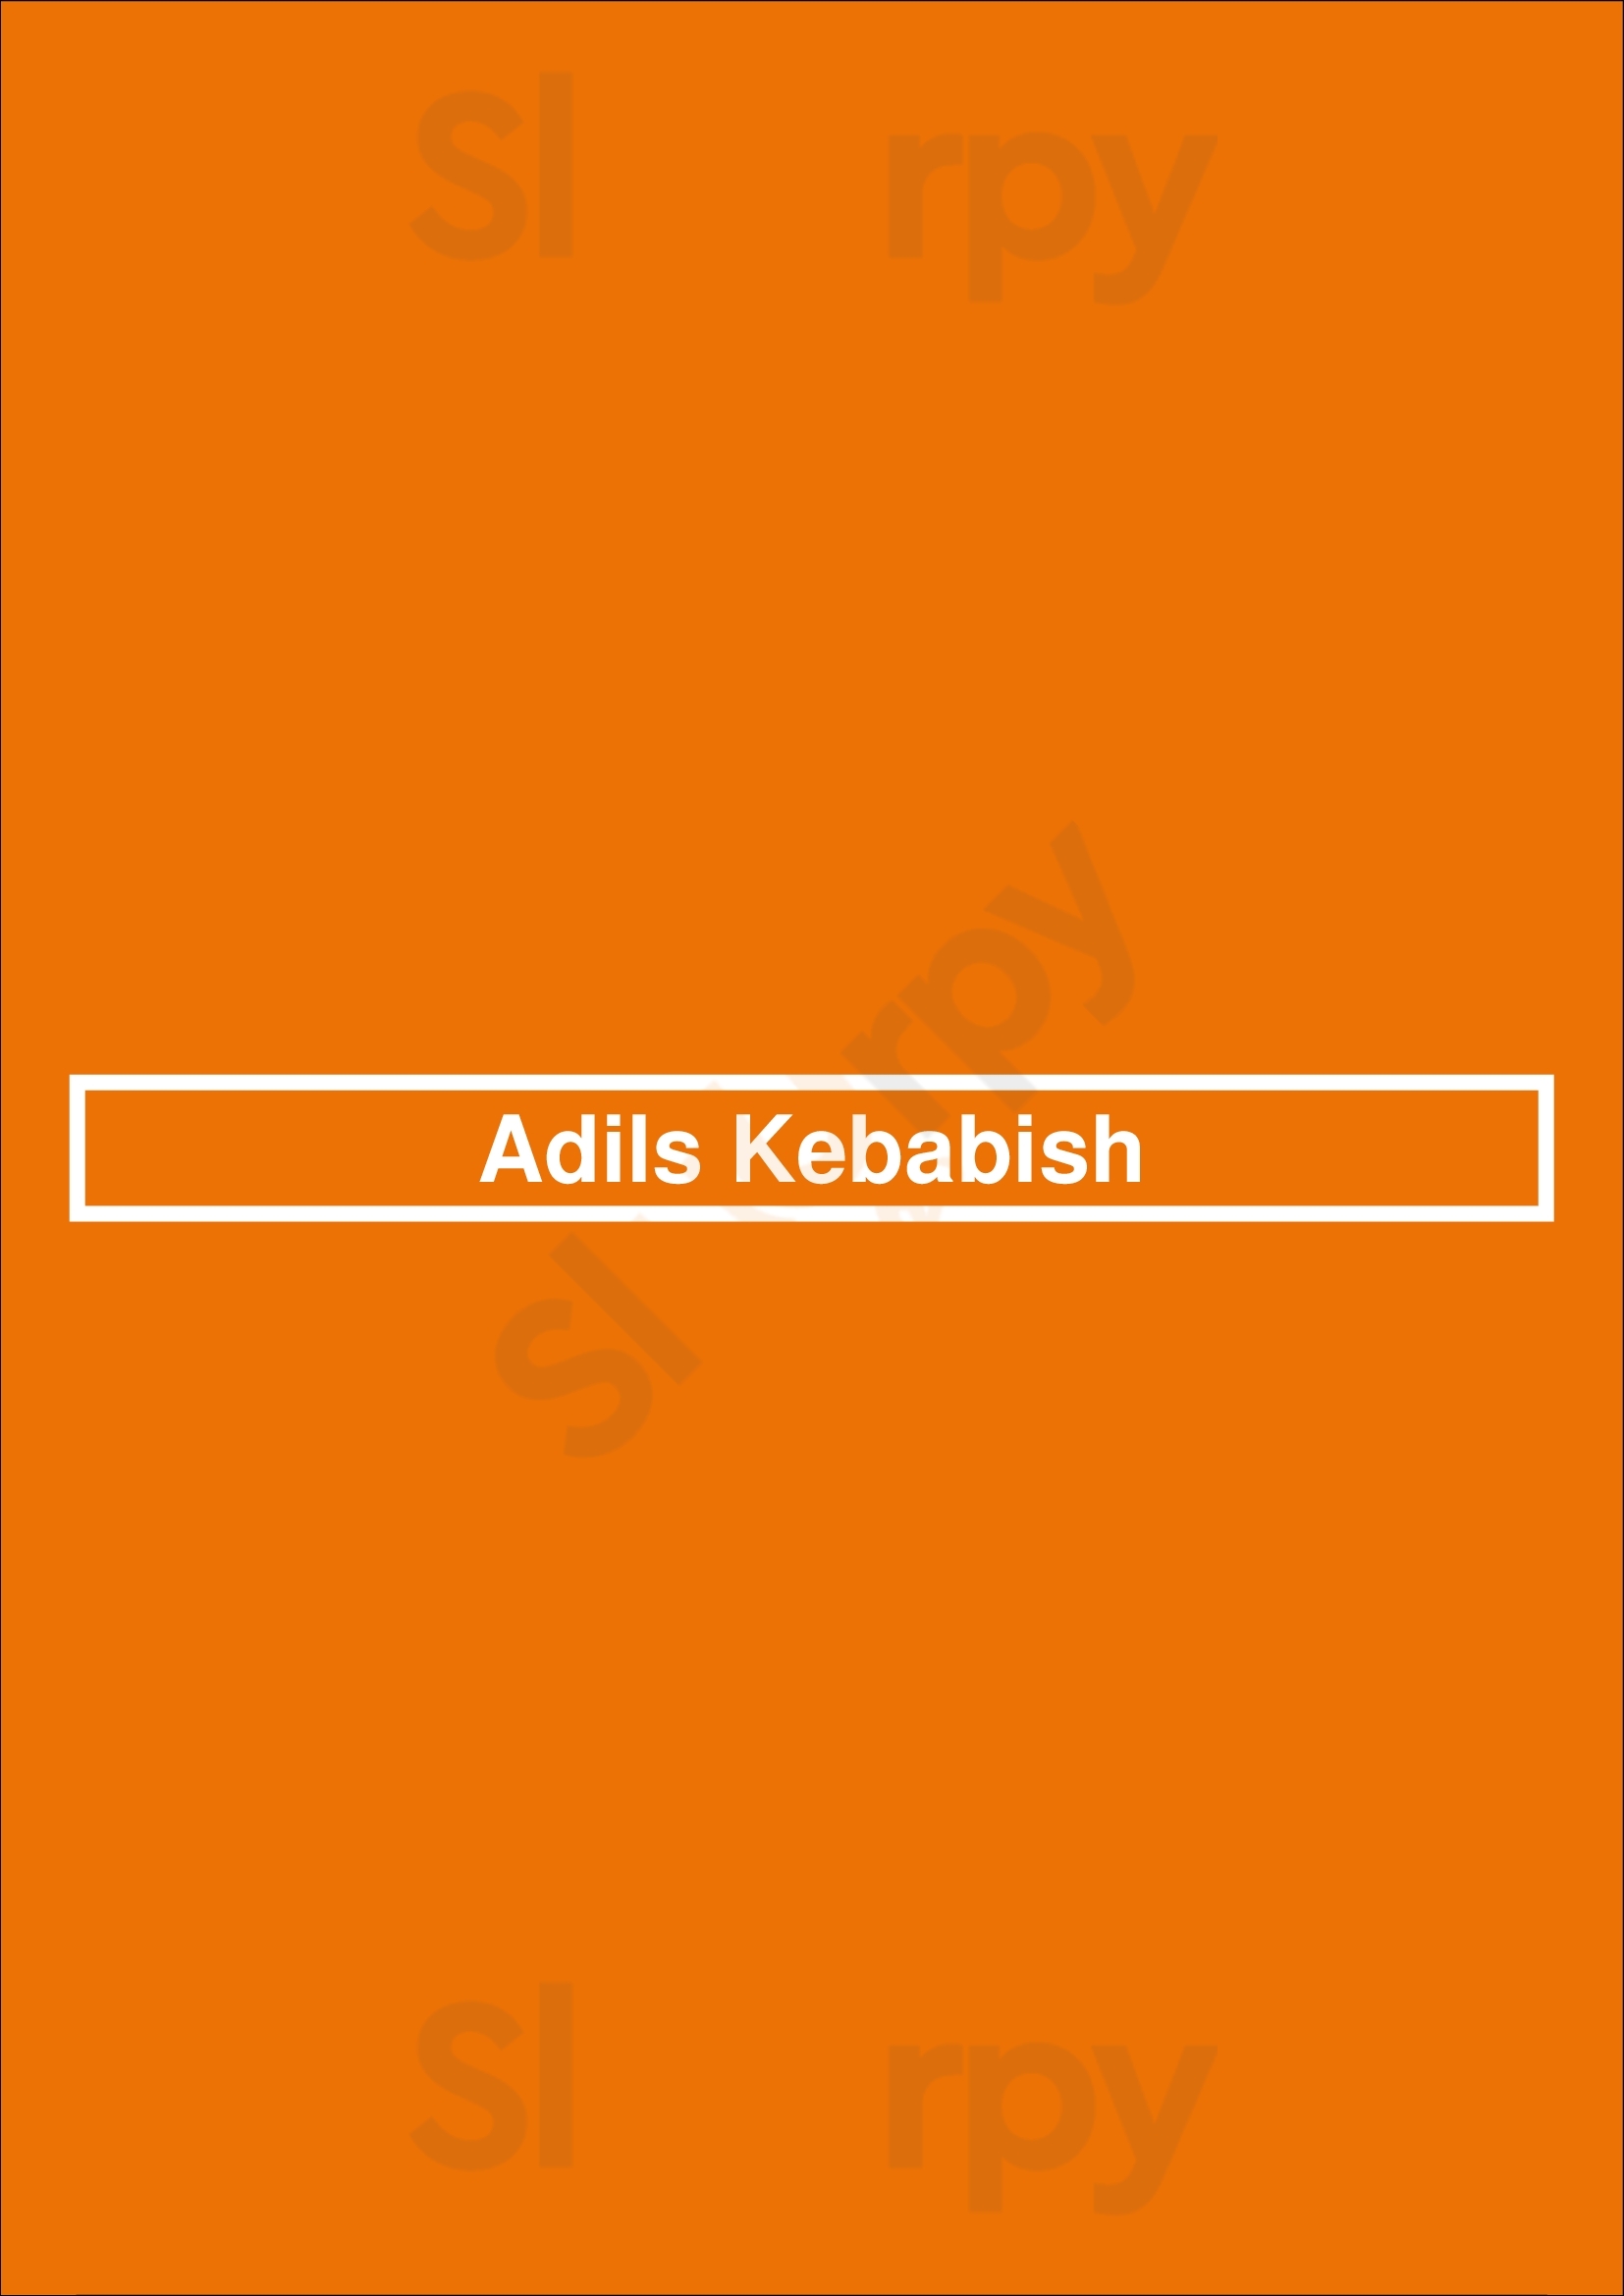 Adils Kebabish Stoke-on-Trent Menu - 1